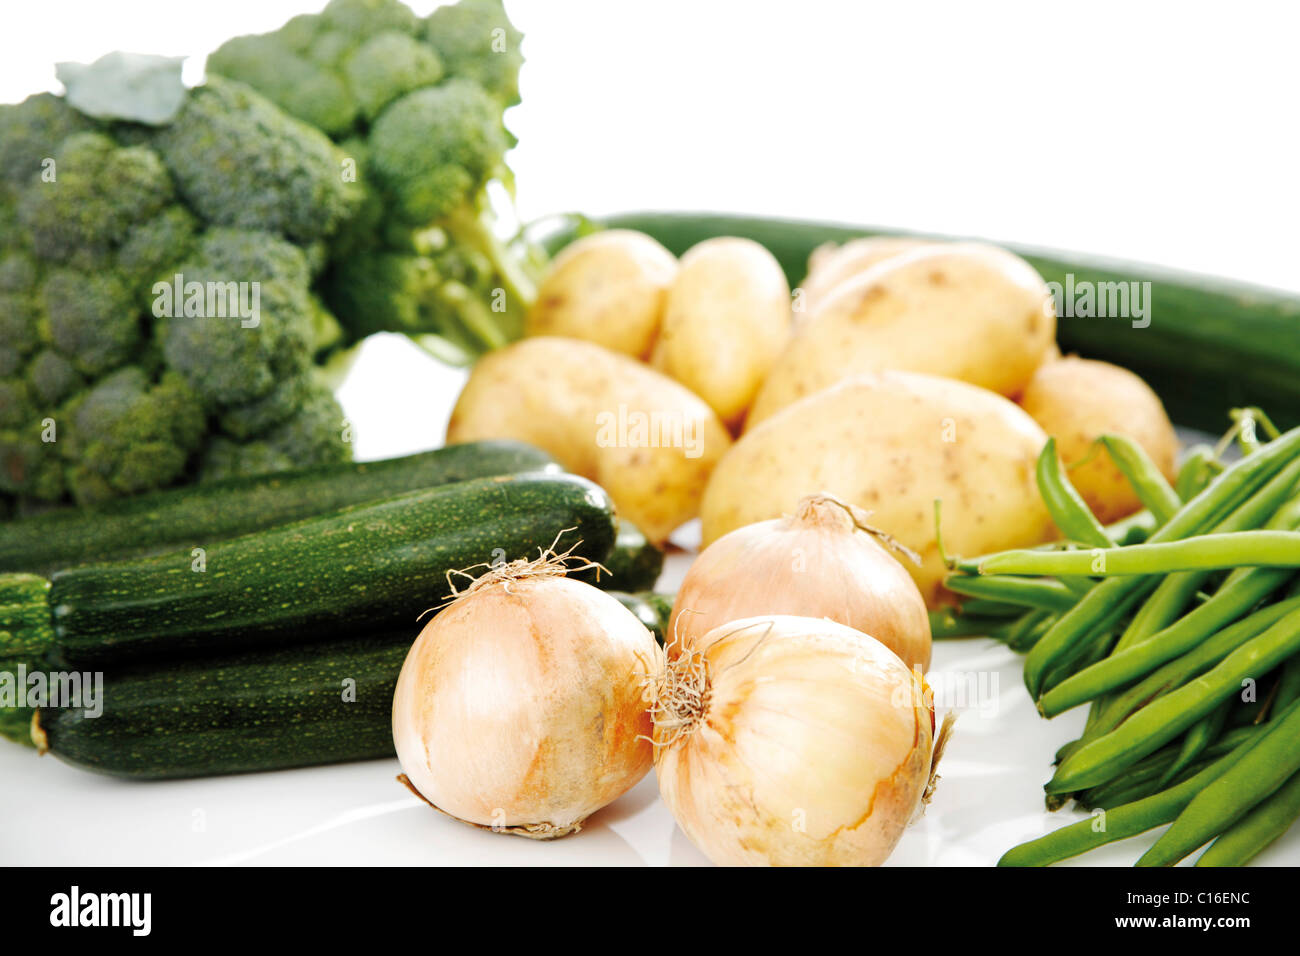 Mezcla de verduras, el brócoli, la patata, calabacín, cebollas, frijoles y pepino Foto de stock